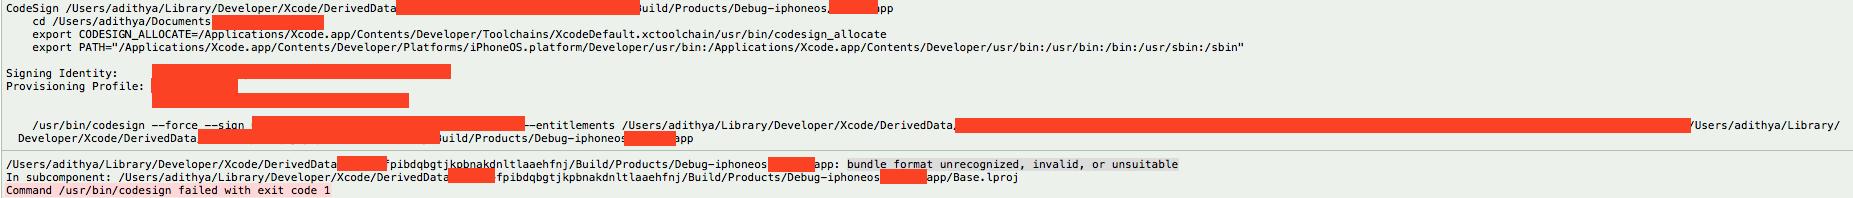 xcode errore formato file oggetto non riconosciuto non valido anche non adatto